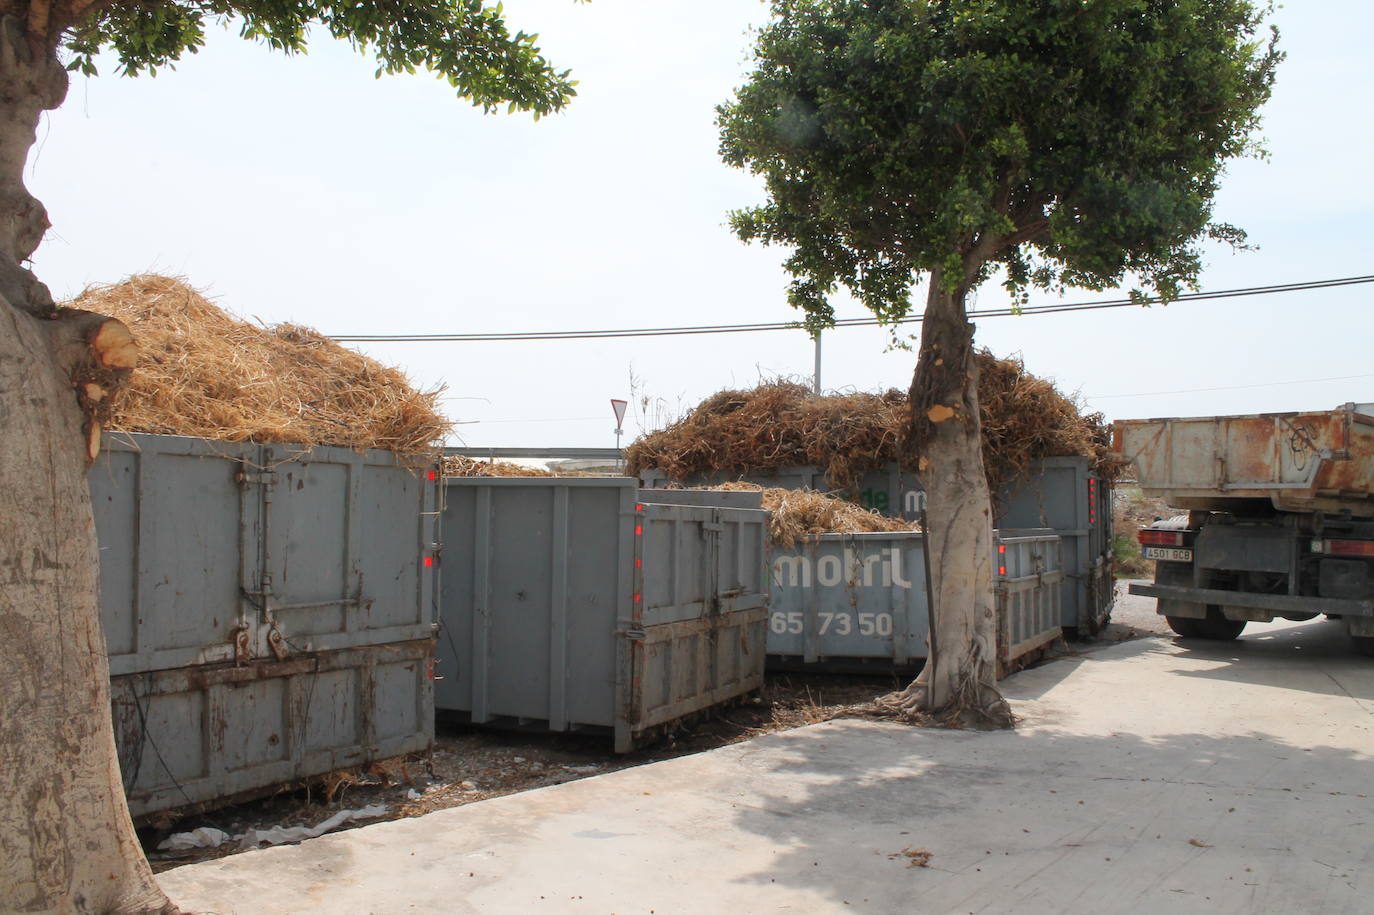 El cierre de la planta de reciclaje de Motril tras sufrir dos incendios está provocando una «parálisis» en el sector agrícola 